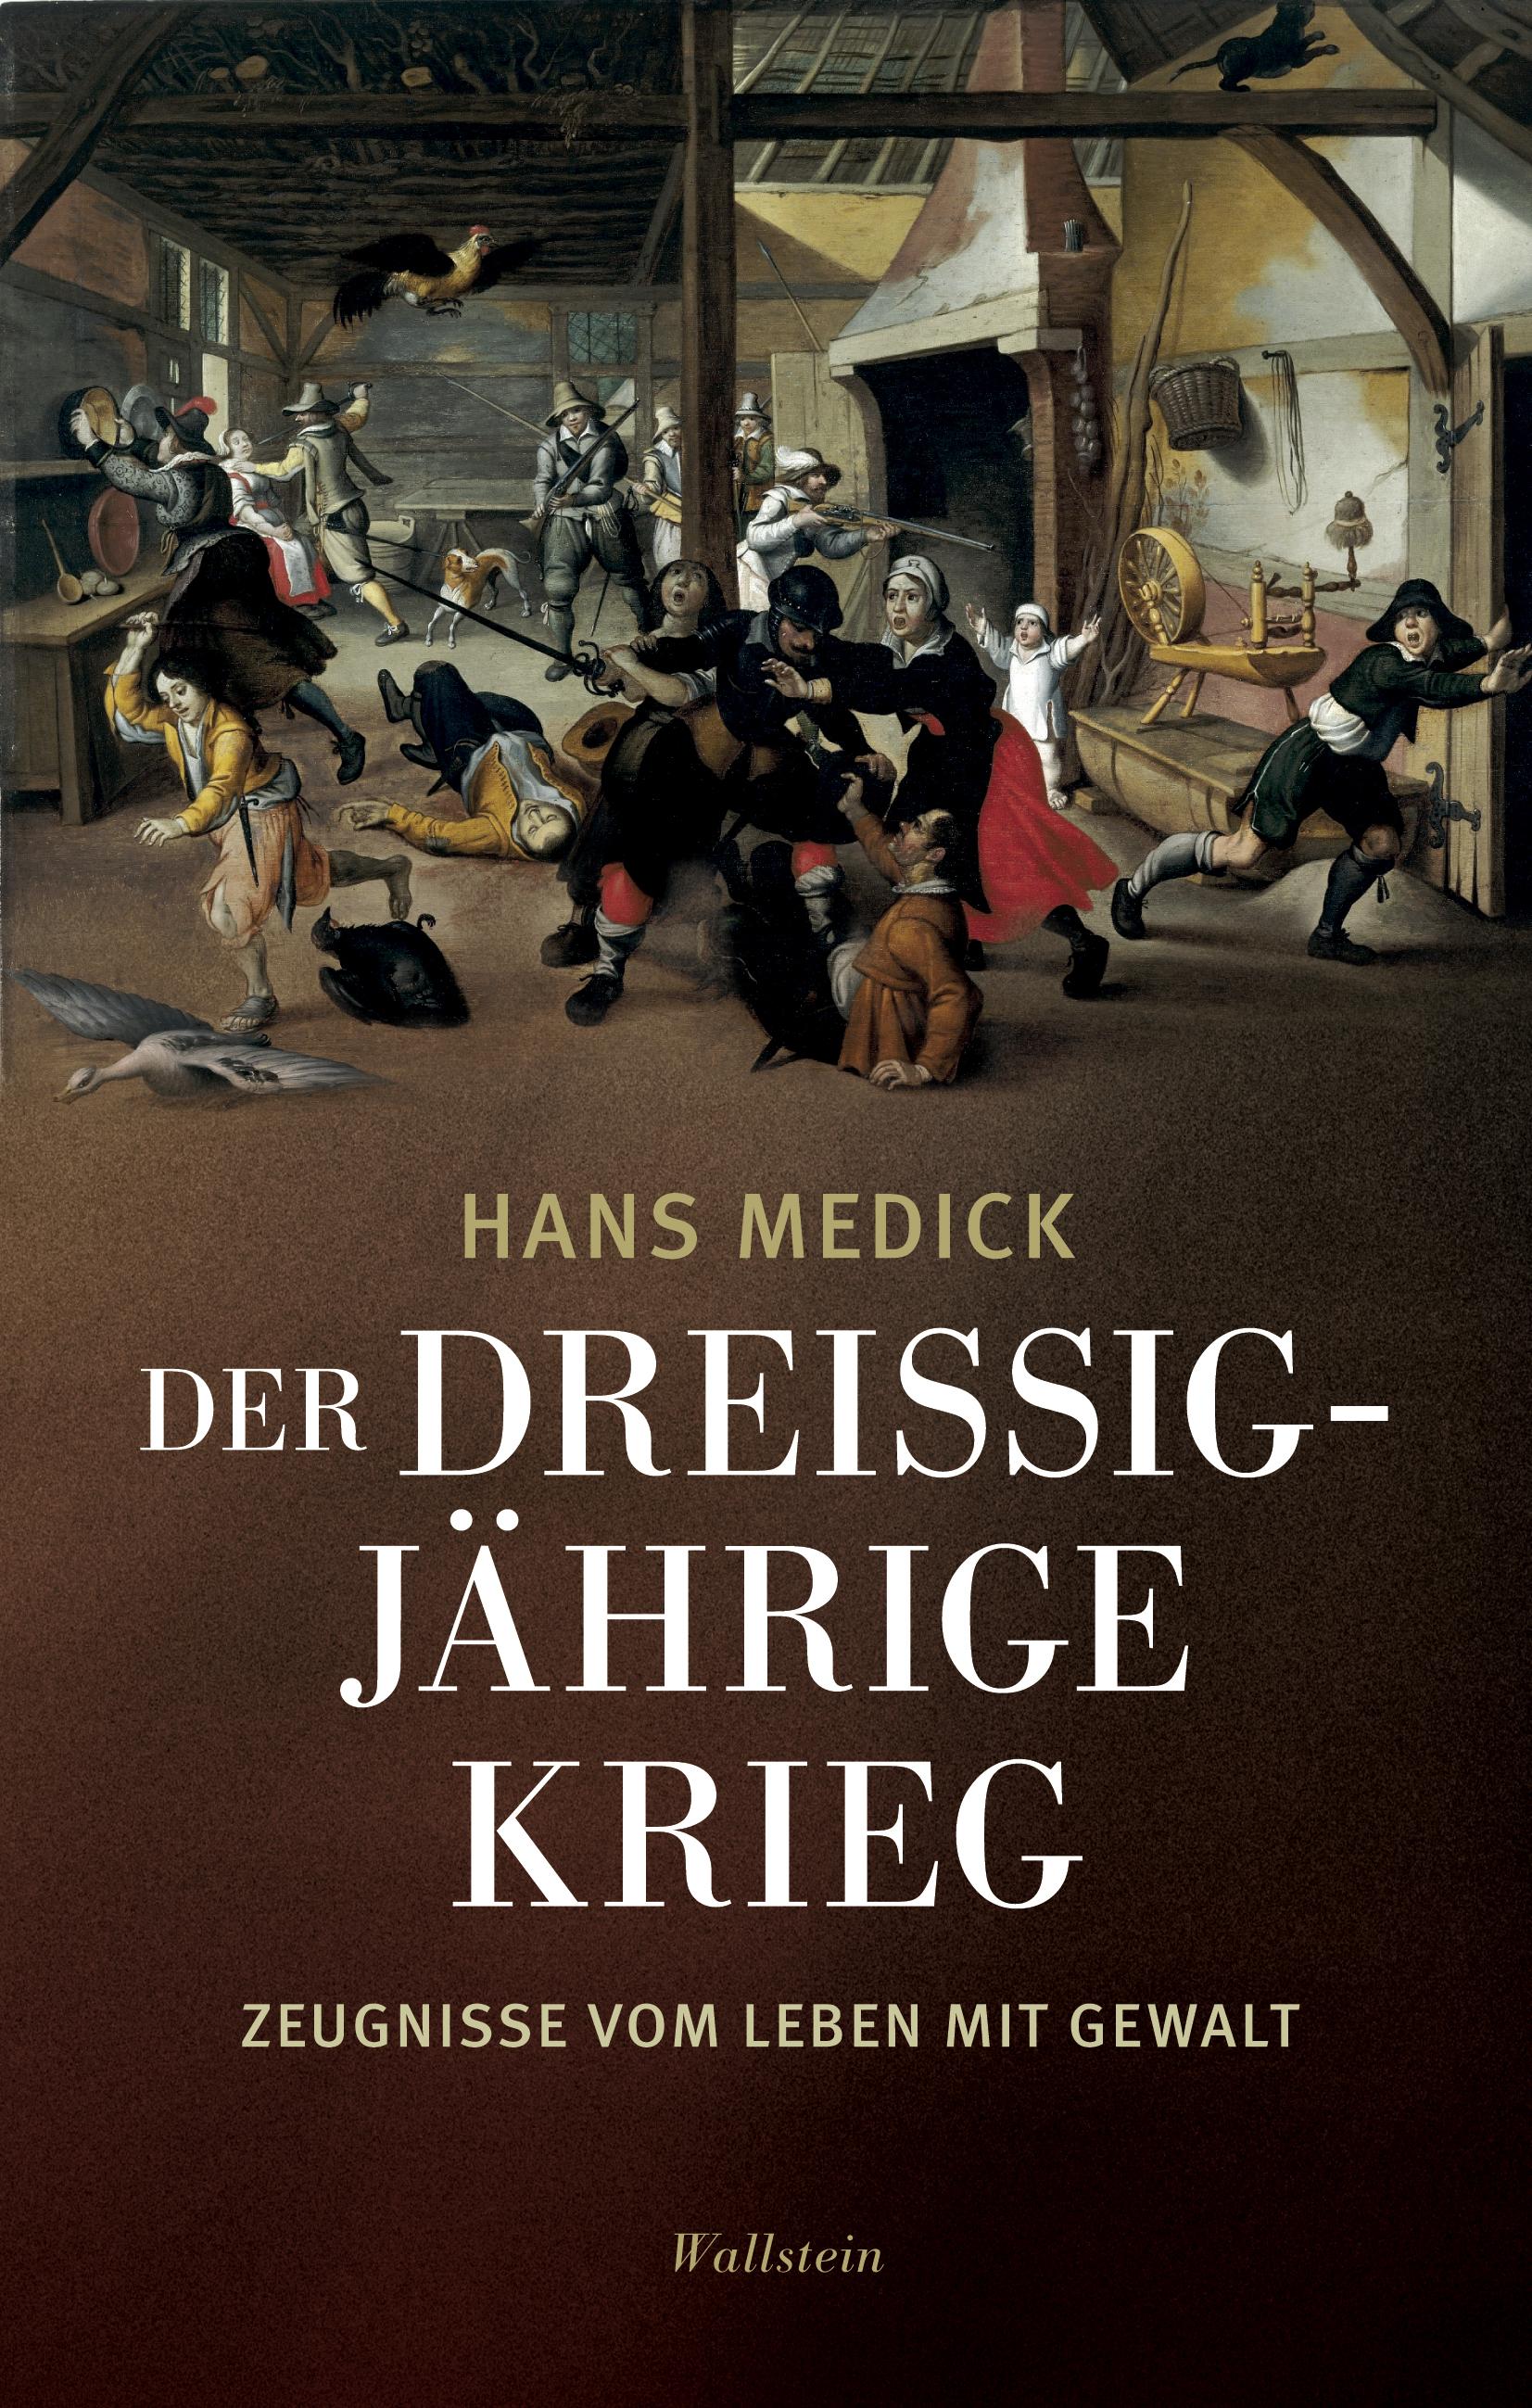 Der Dreißigjährige Krieg / Zeugnisse vom Leben mit Gewalt / Hans Medick / Buch / 448 S. / Deutsch / 2018 / Wallstein / EAN 9783835332485 - Medick, Hans